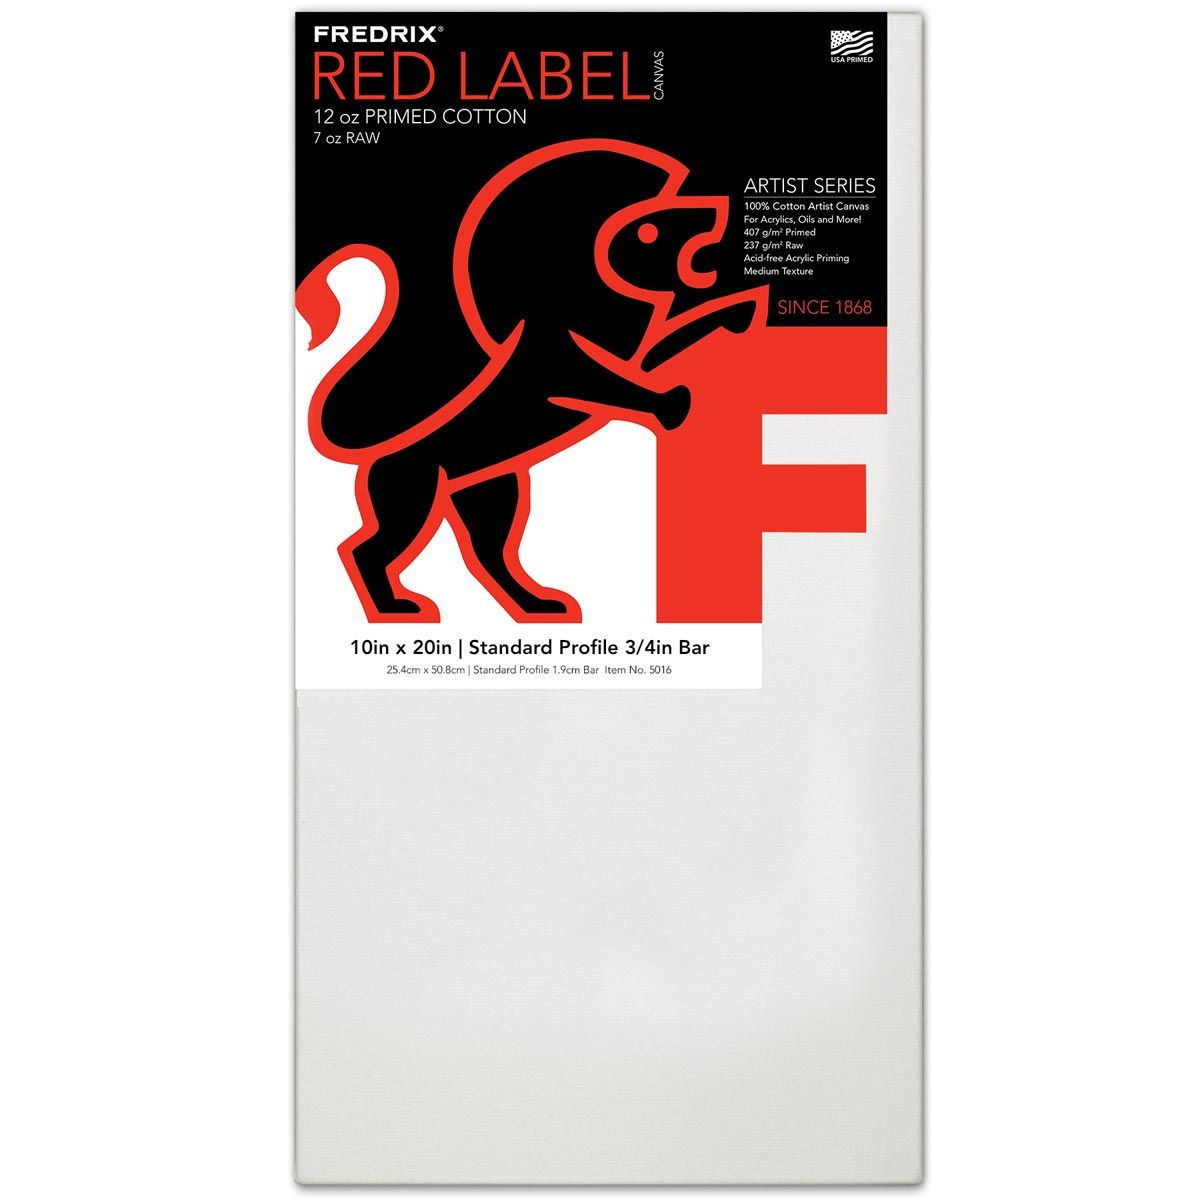 Fredrix Red Label 3/4" Profile Cotton Canvas 10" x 20"